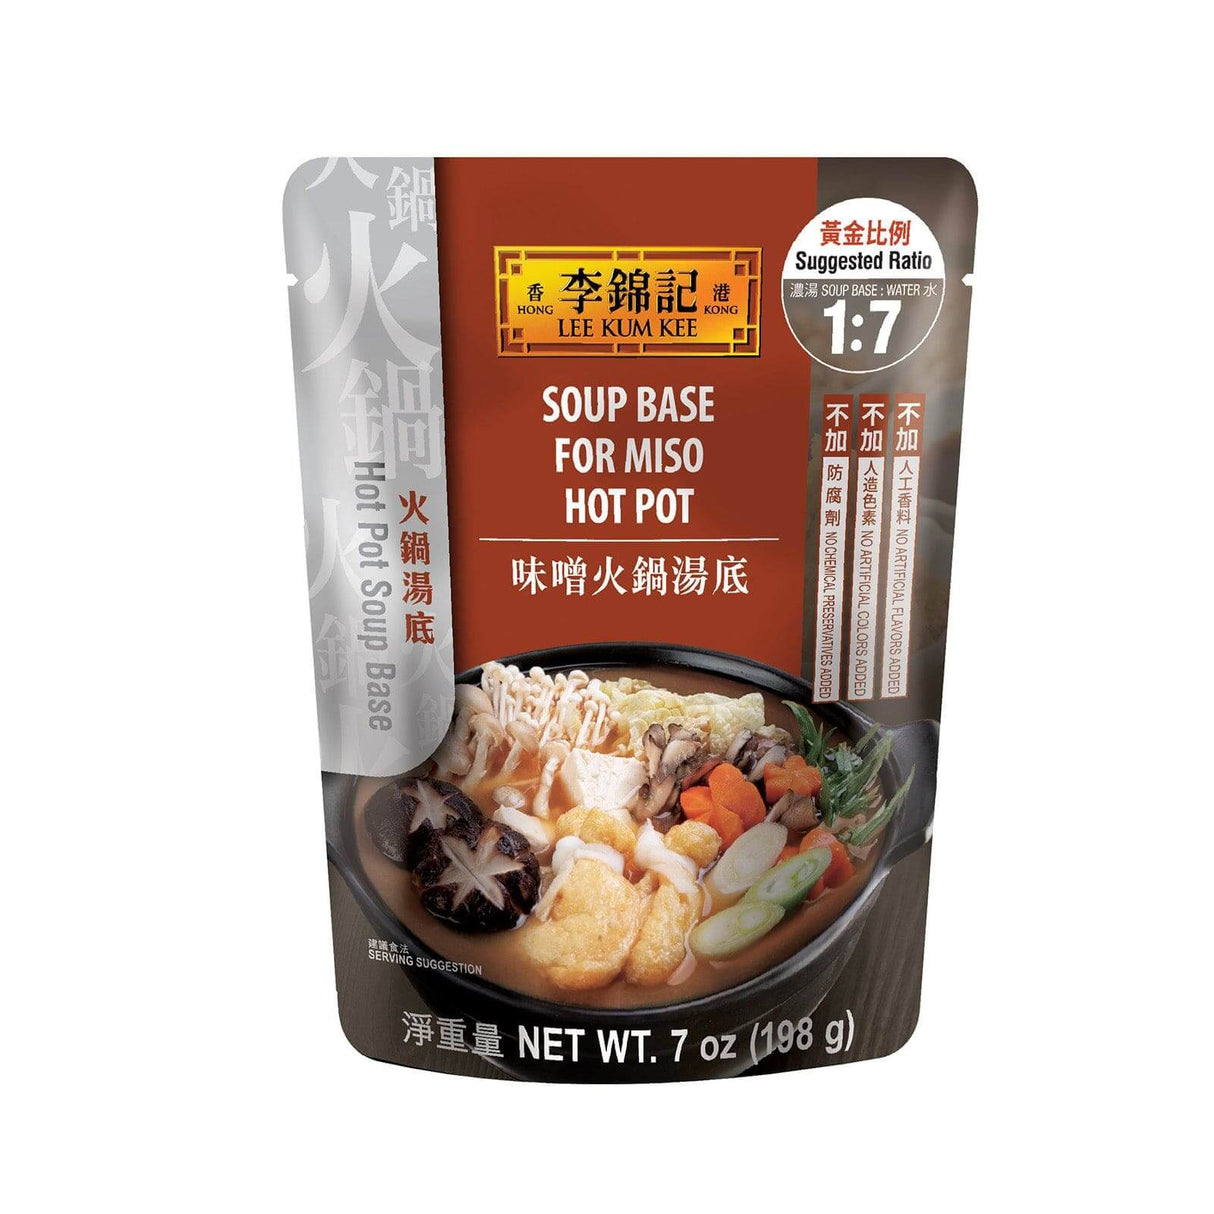 Lee Kum Kee Soup Base For Miso Hot Pot